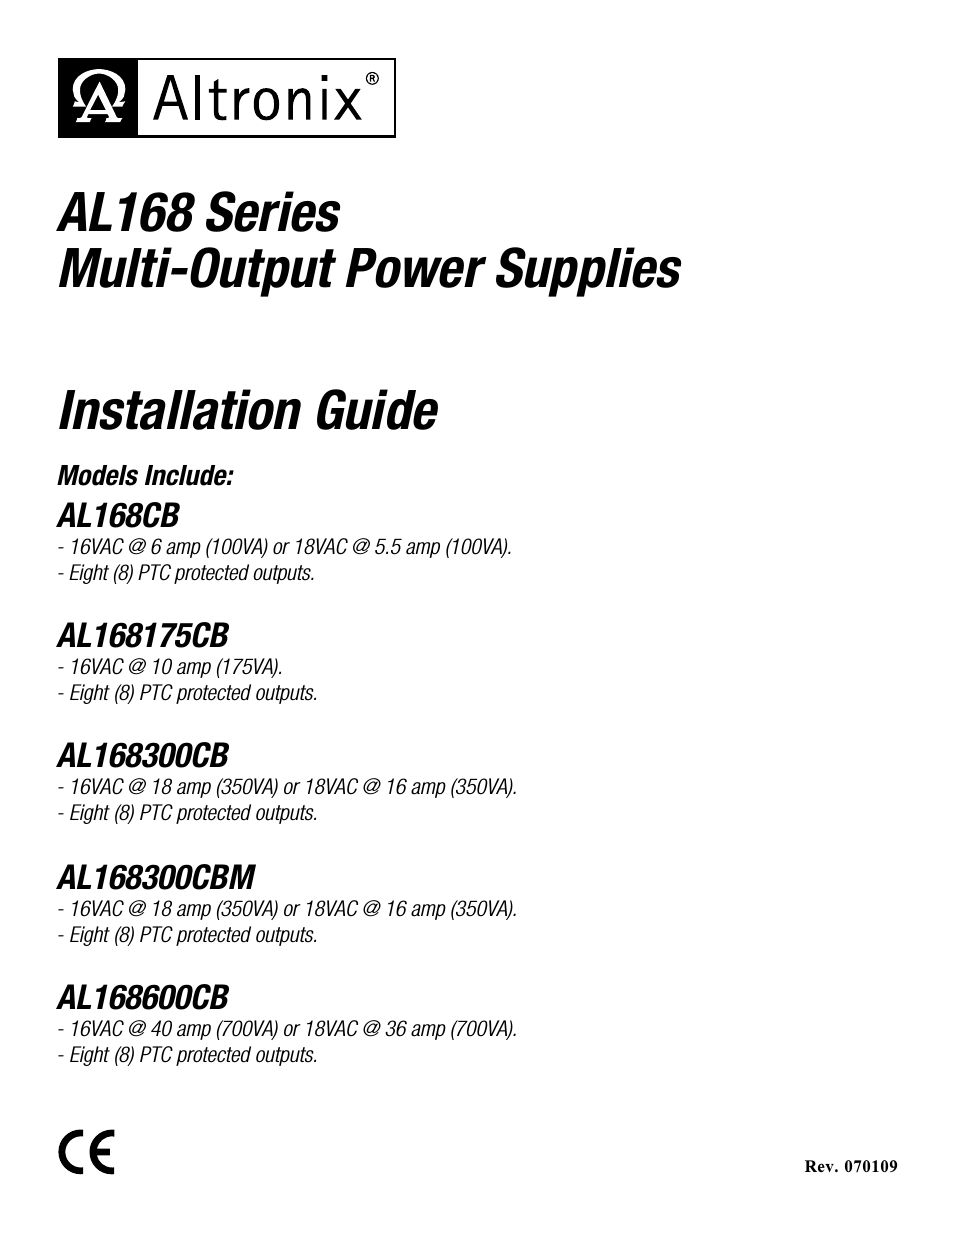 AL168 Series Installation Instructions